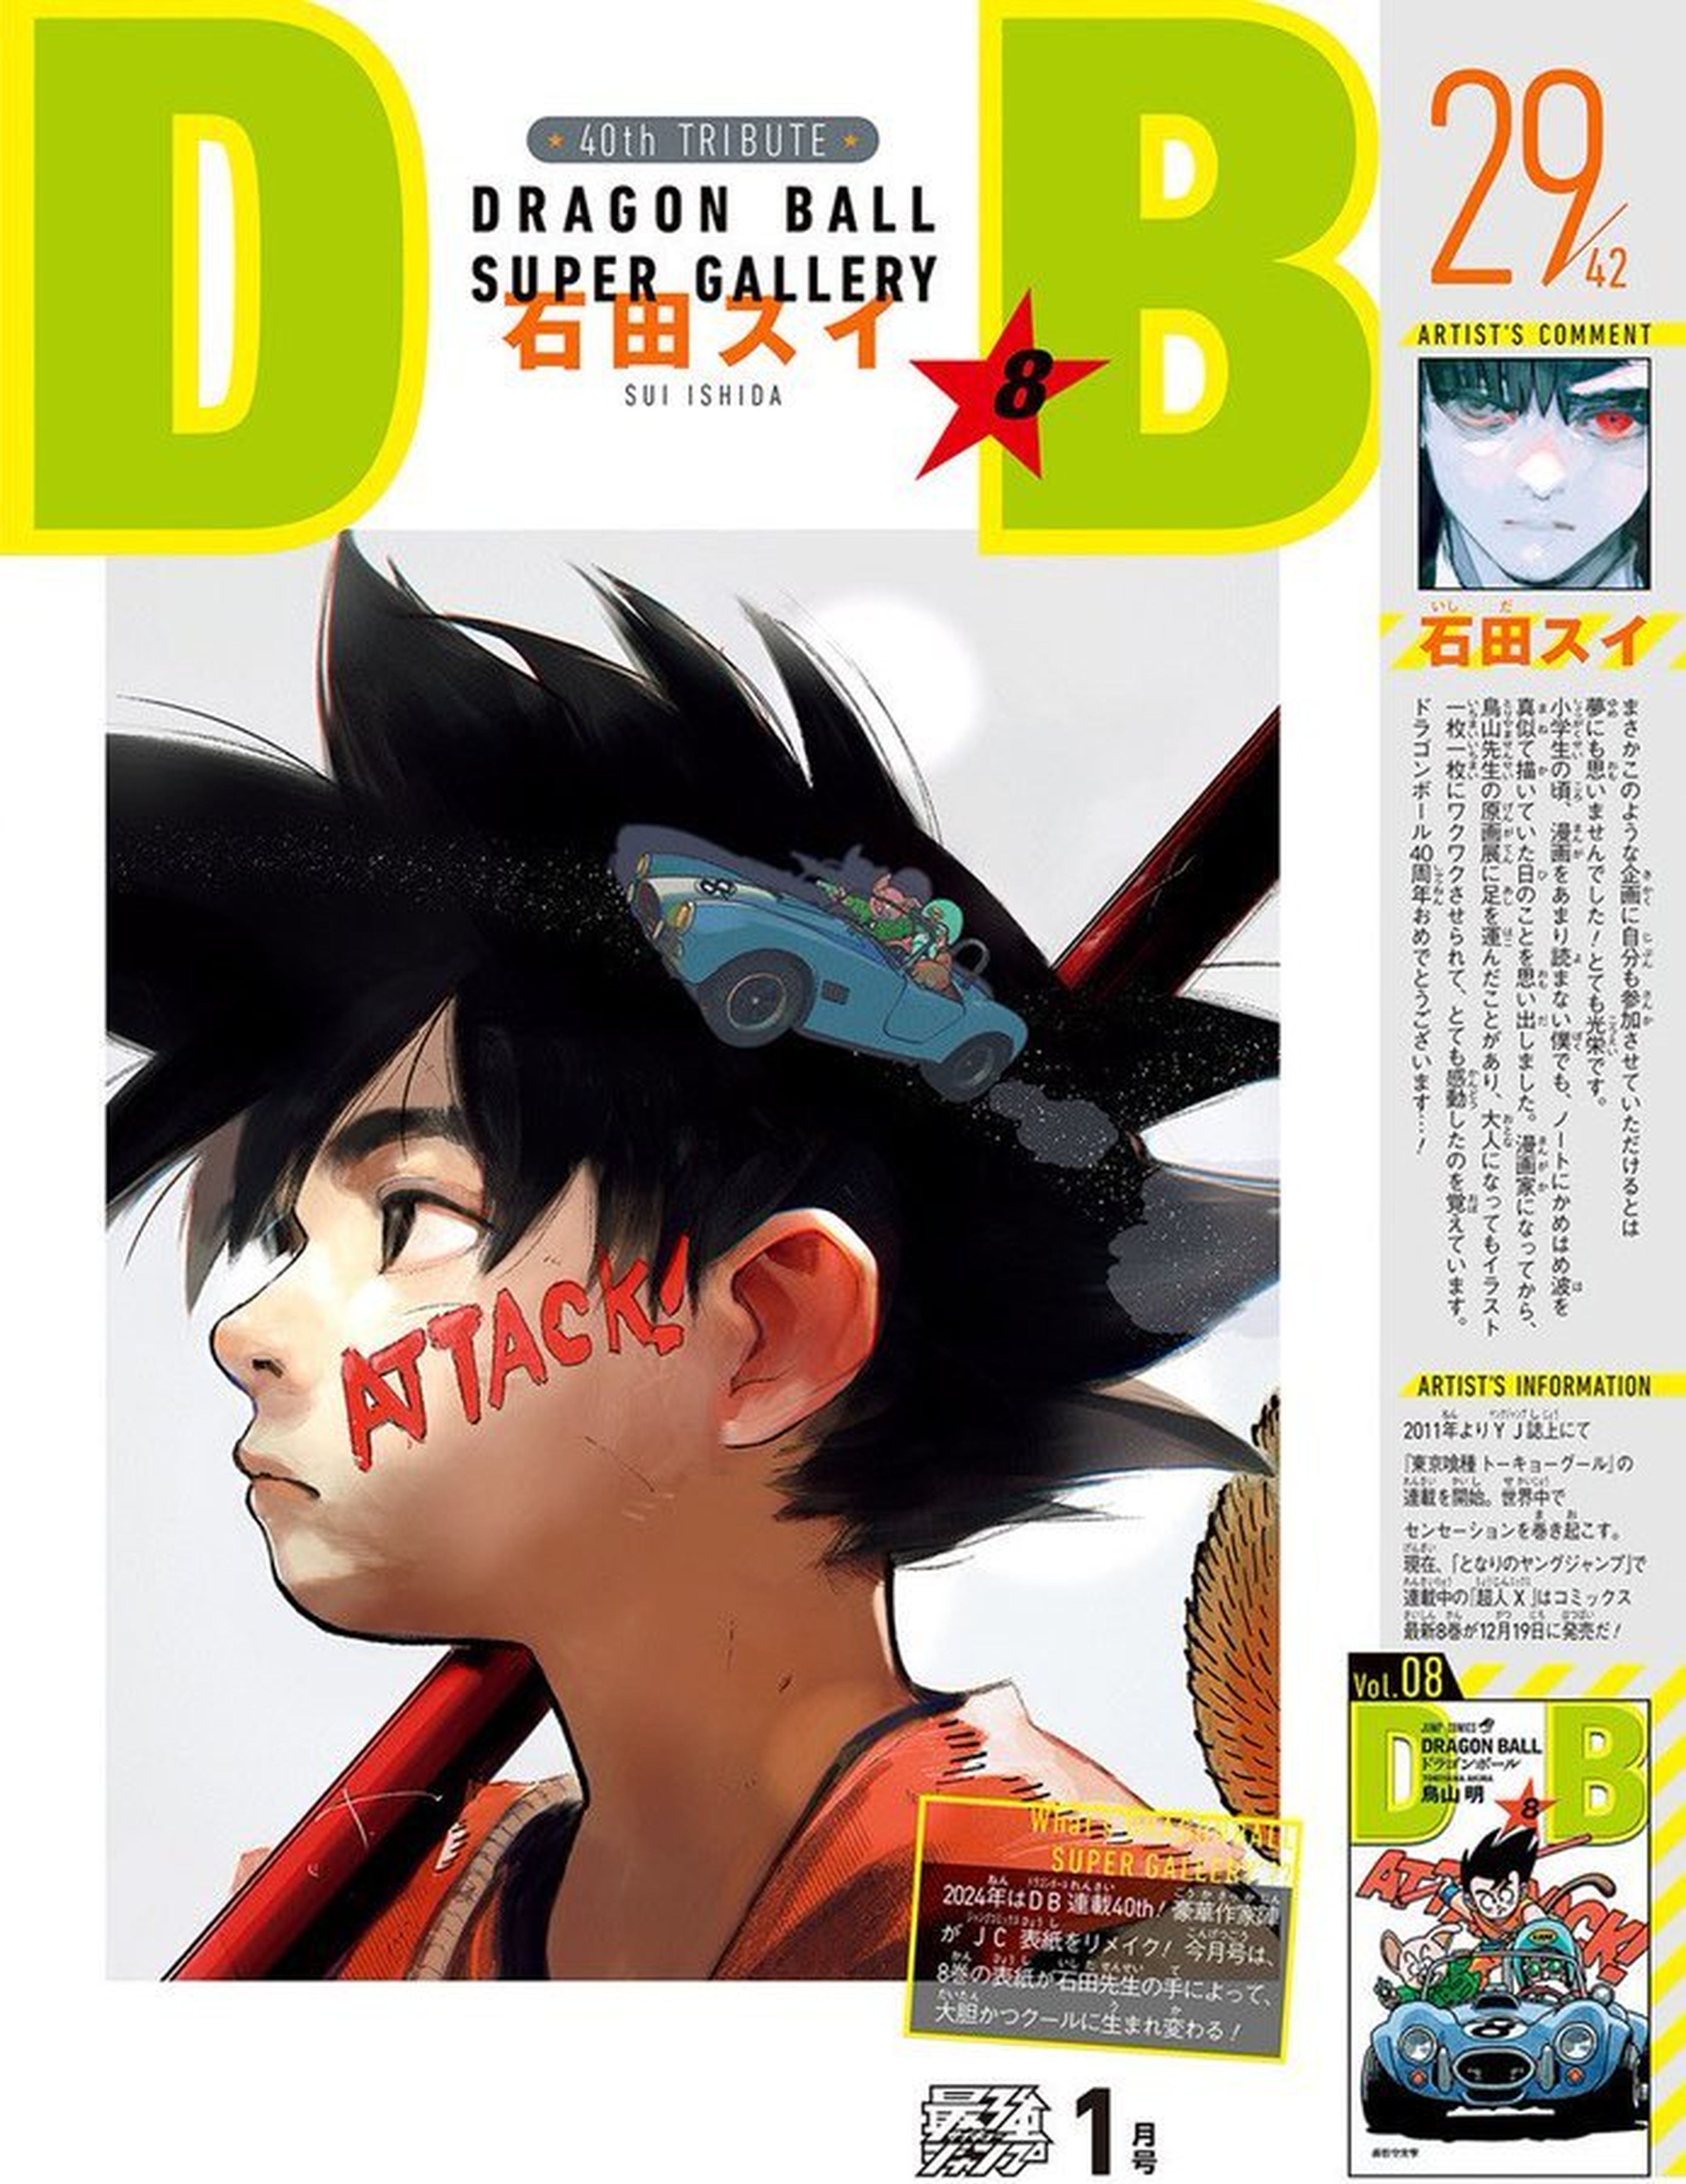 Dragon Ball - Sui Ishida, autor de Tokyo Ghoul, reinventa con mucha calidad la portada del tomo 8 de la serie de Akira Toriyama